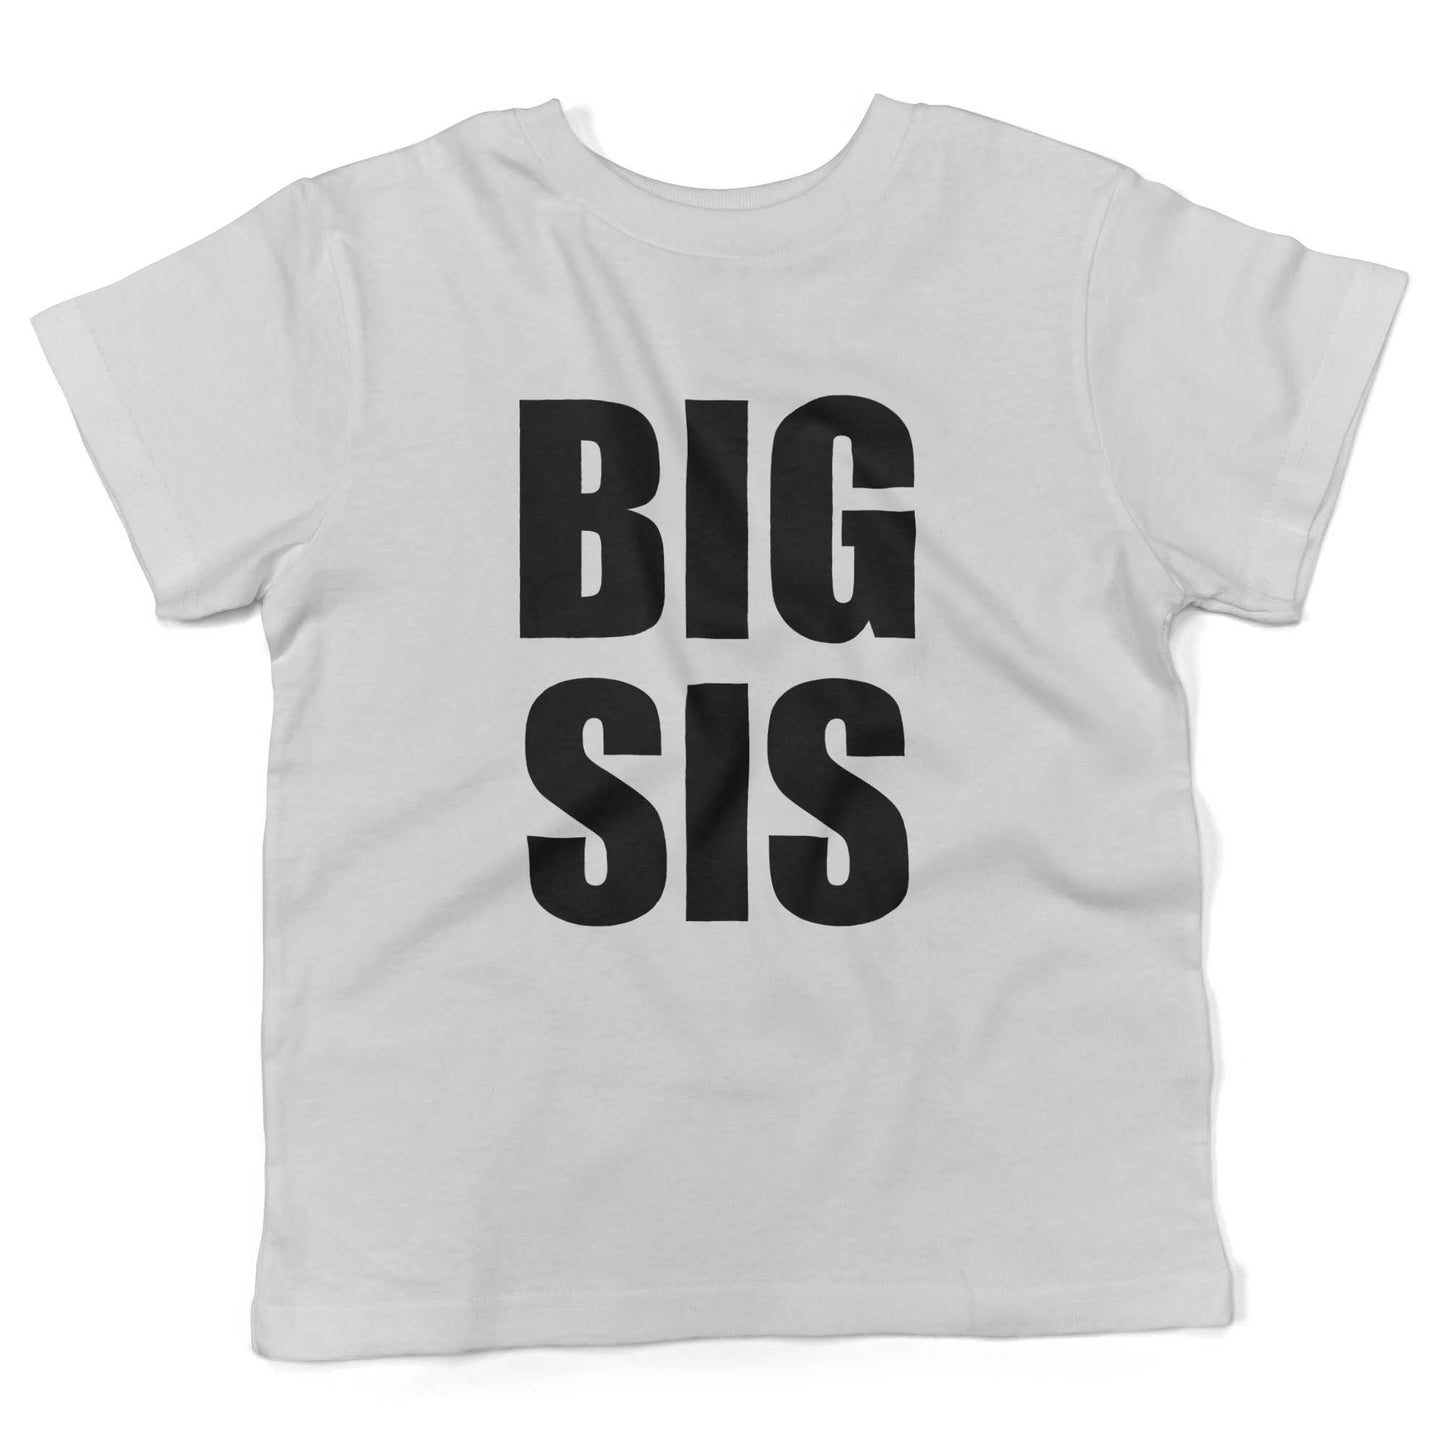 BIG SIS Toddler Shirt-White-2T